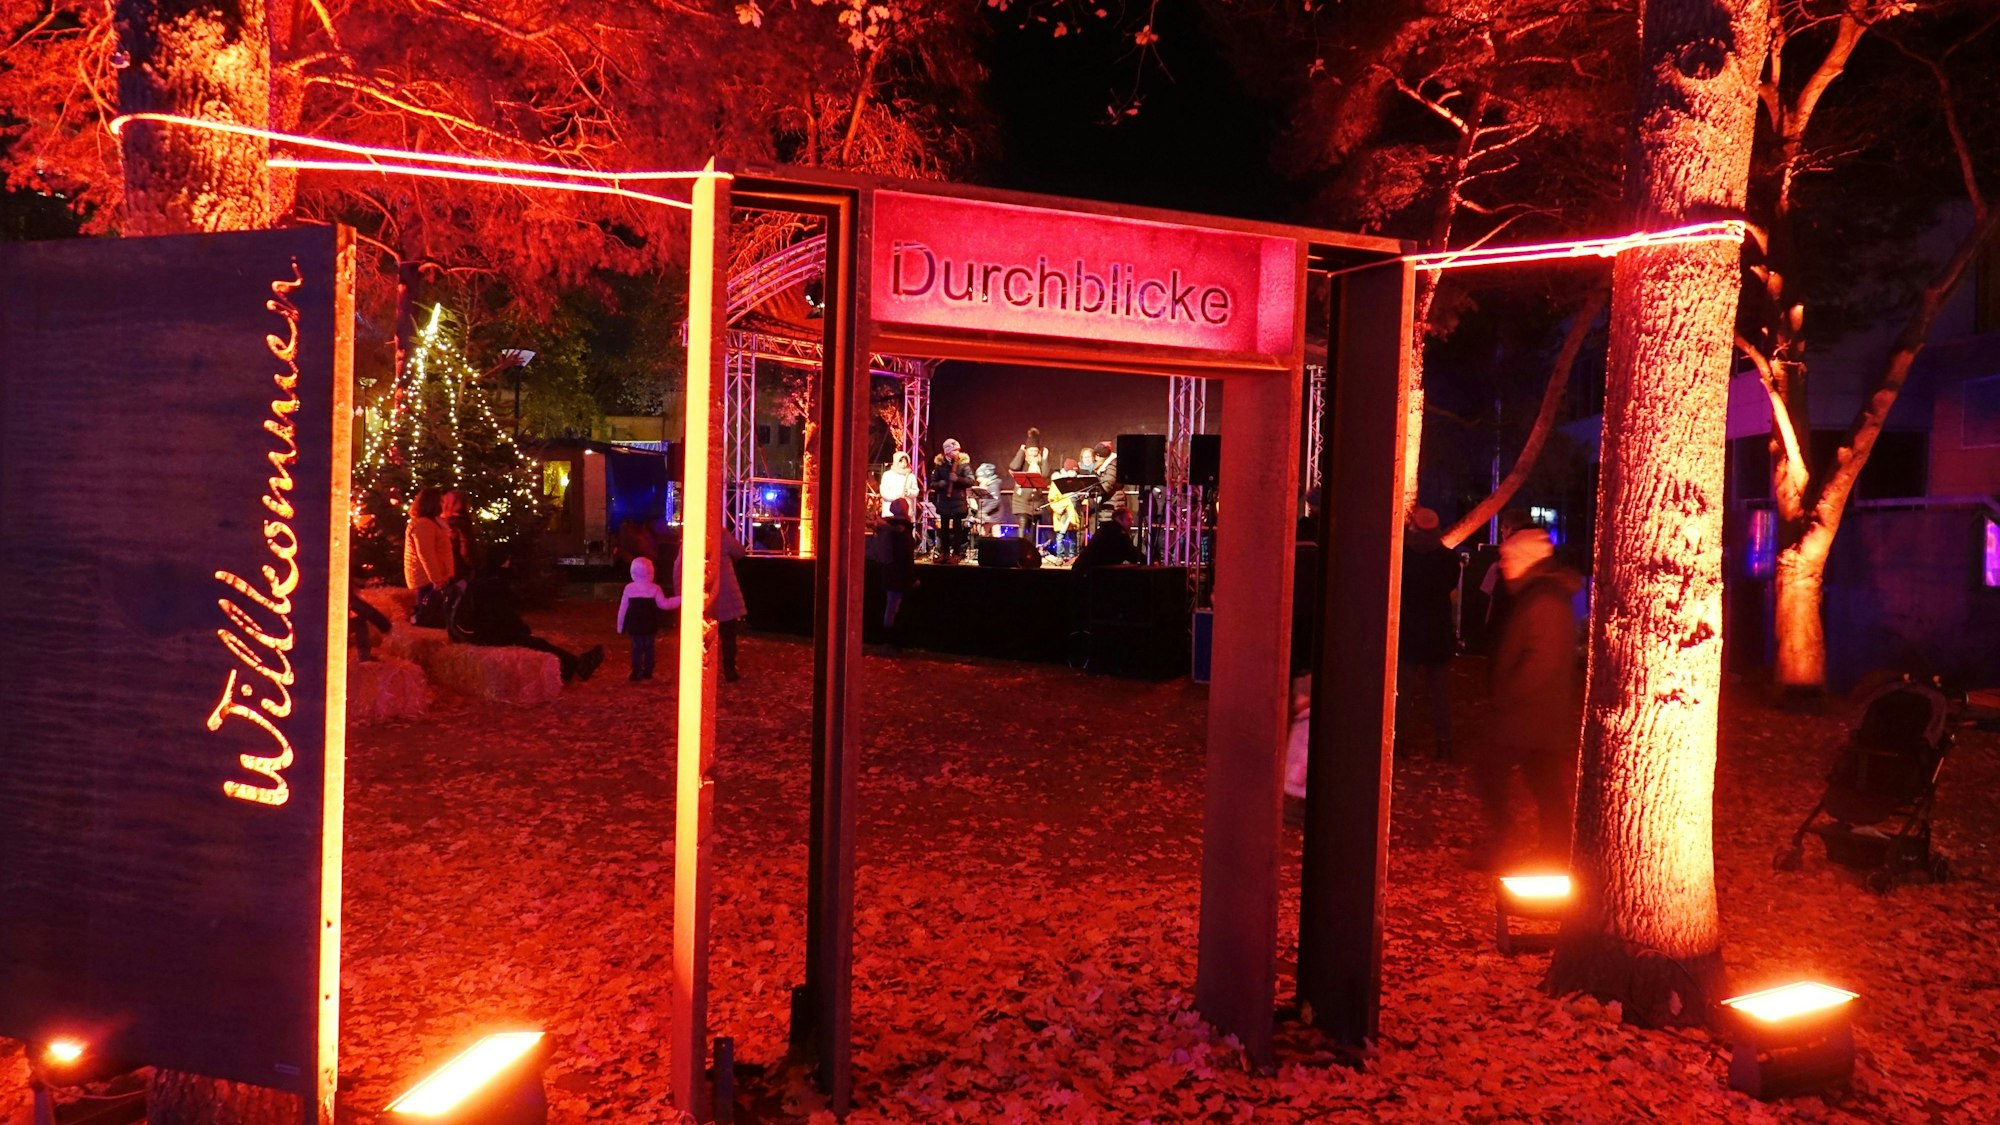 Ein Willkommen in Flammenschrift begrüßt die Besucher im Klosterpark. Ein rotes Tor ermöglicht den Durchblick auf die Eventbühne.